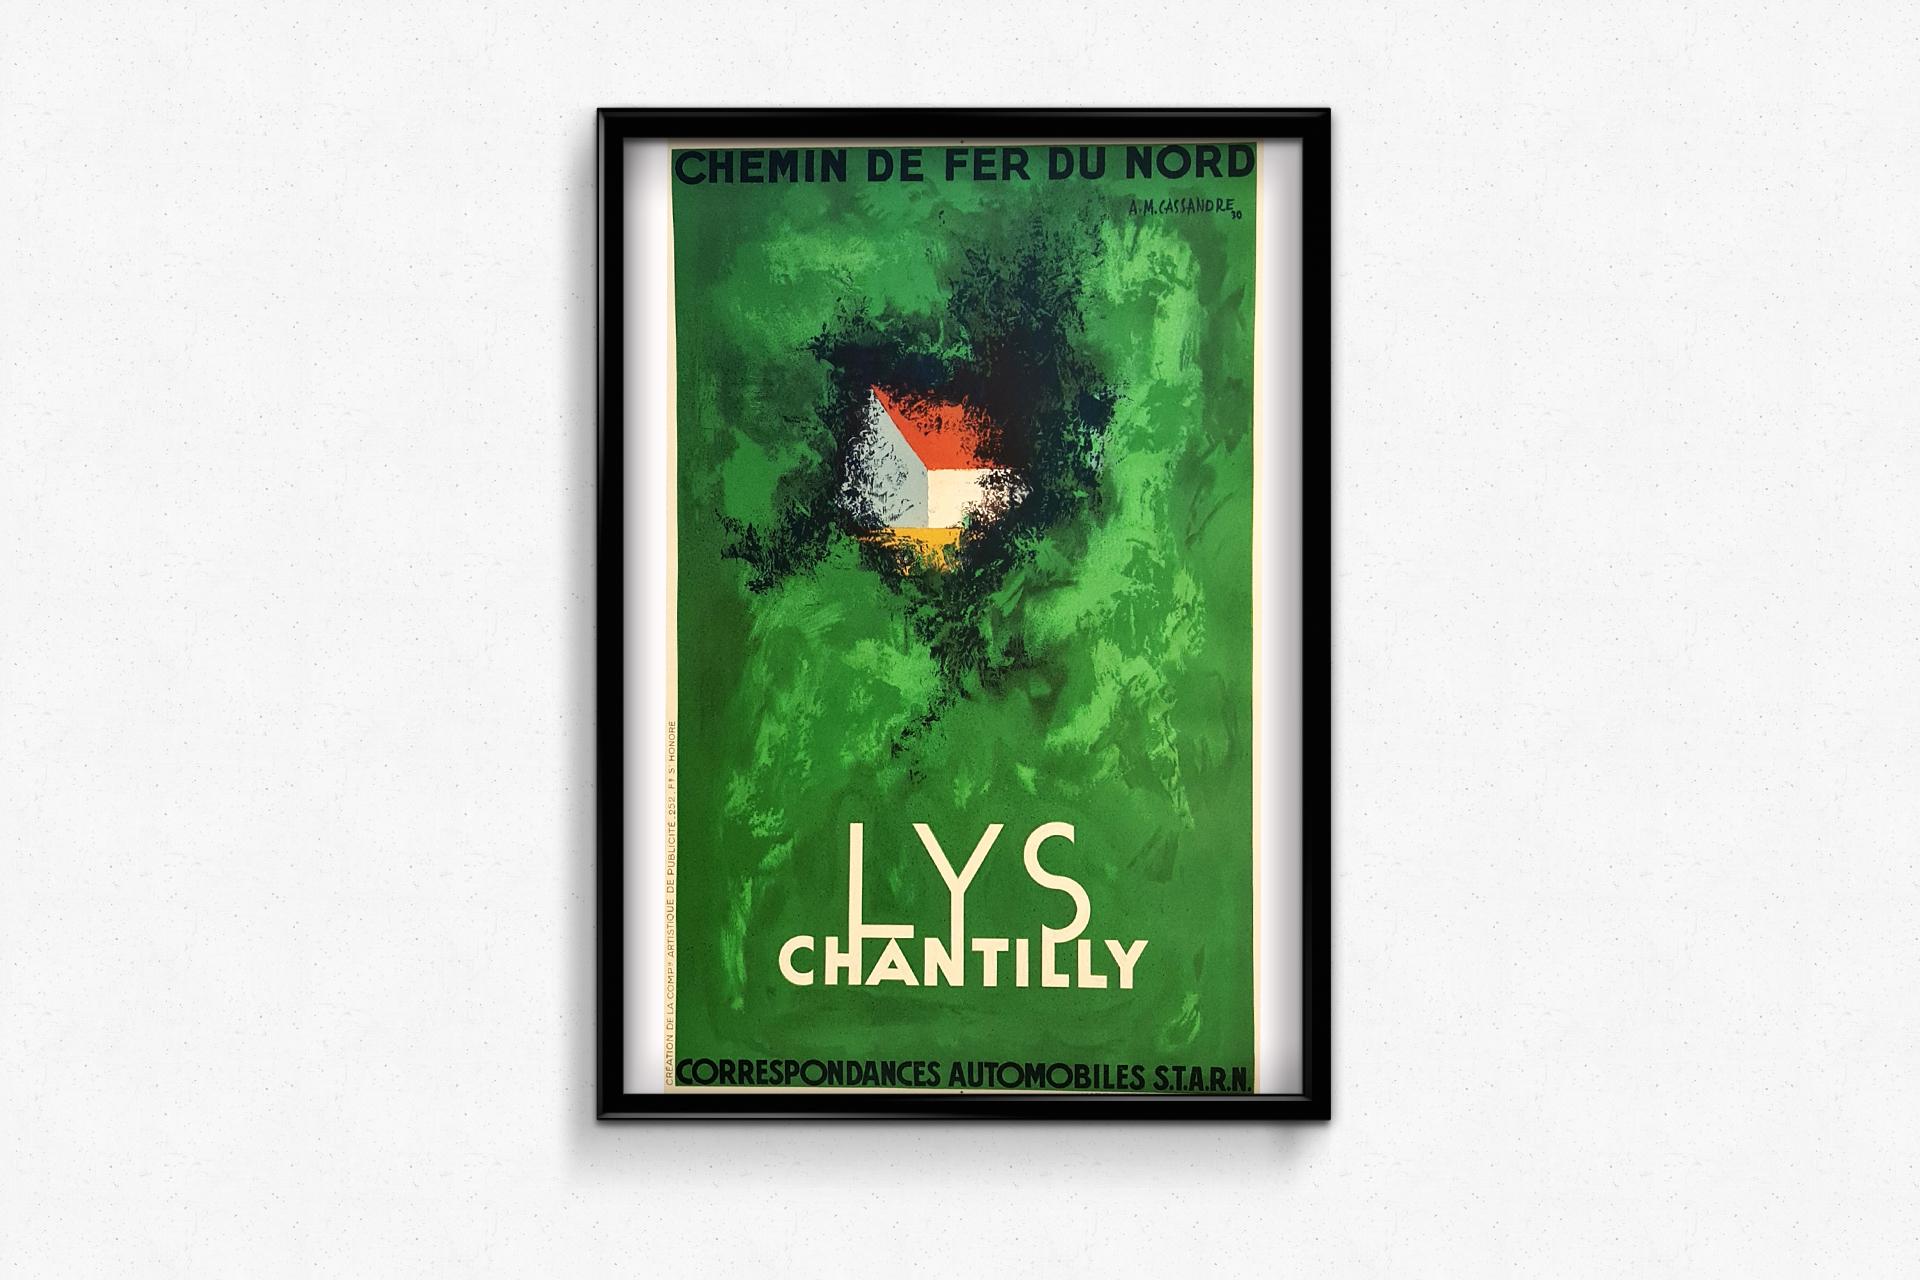 Lys Chantilly - Ville de Parc et de Sports Circa 1930 Original Poster - Art Deco Print by Adolphe Jean-Marie (AM) Cassandre